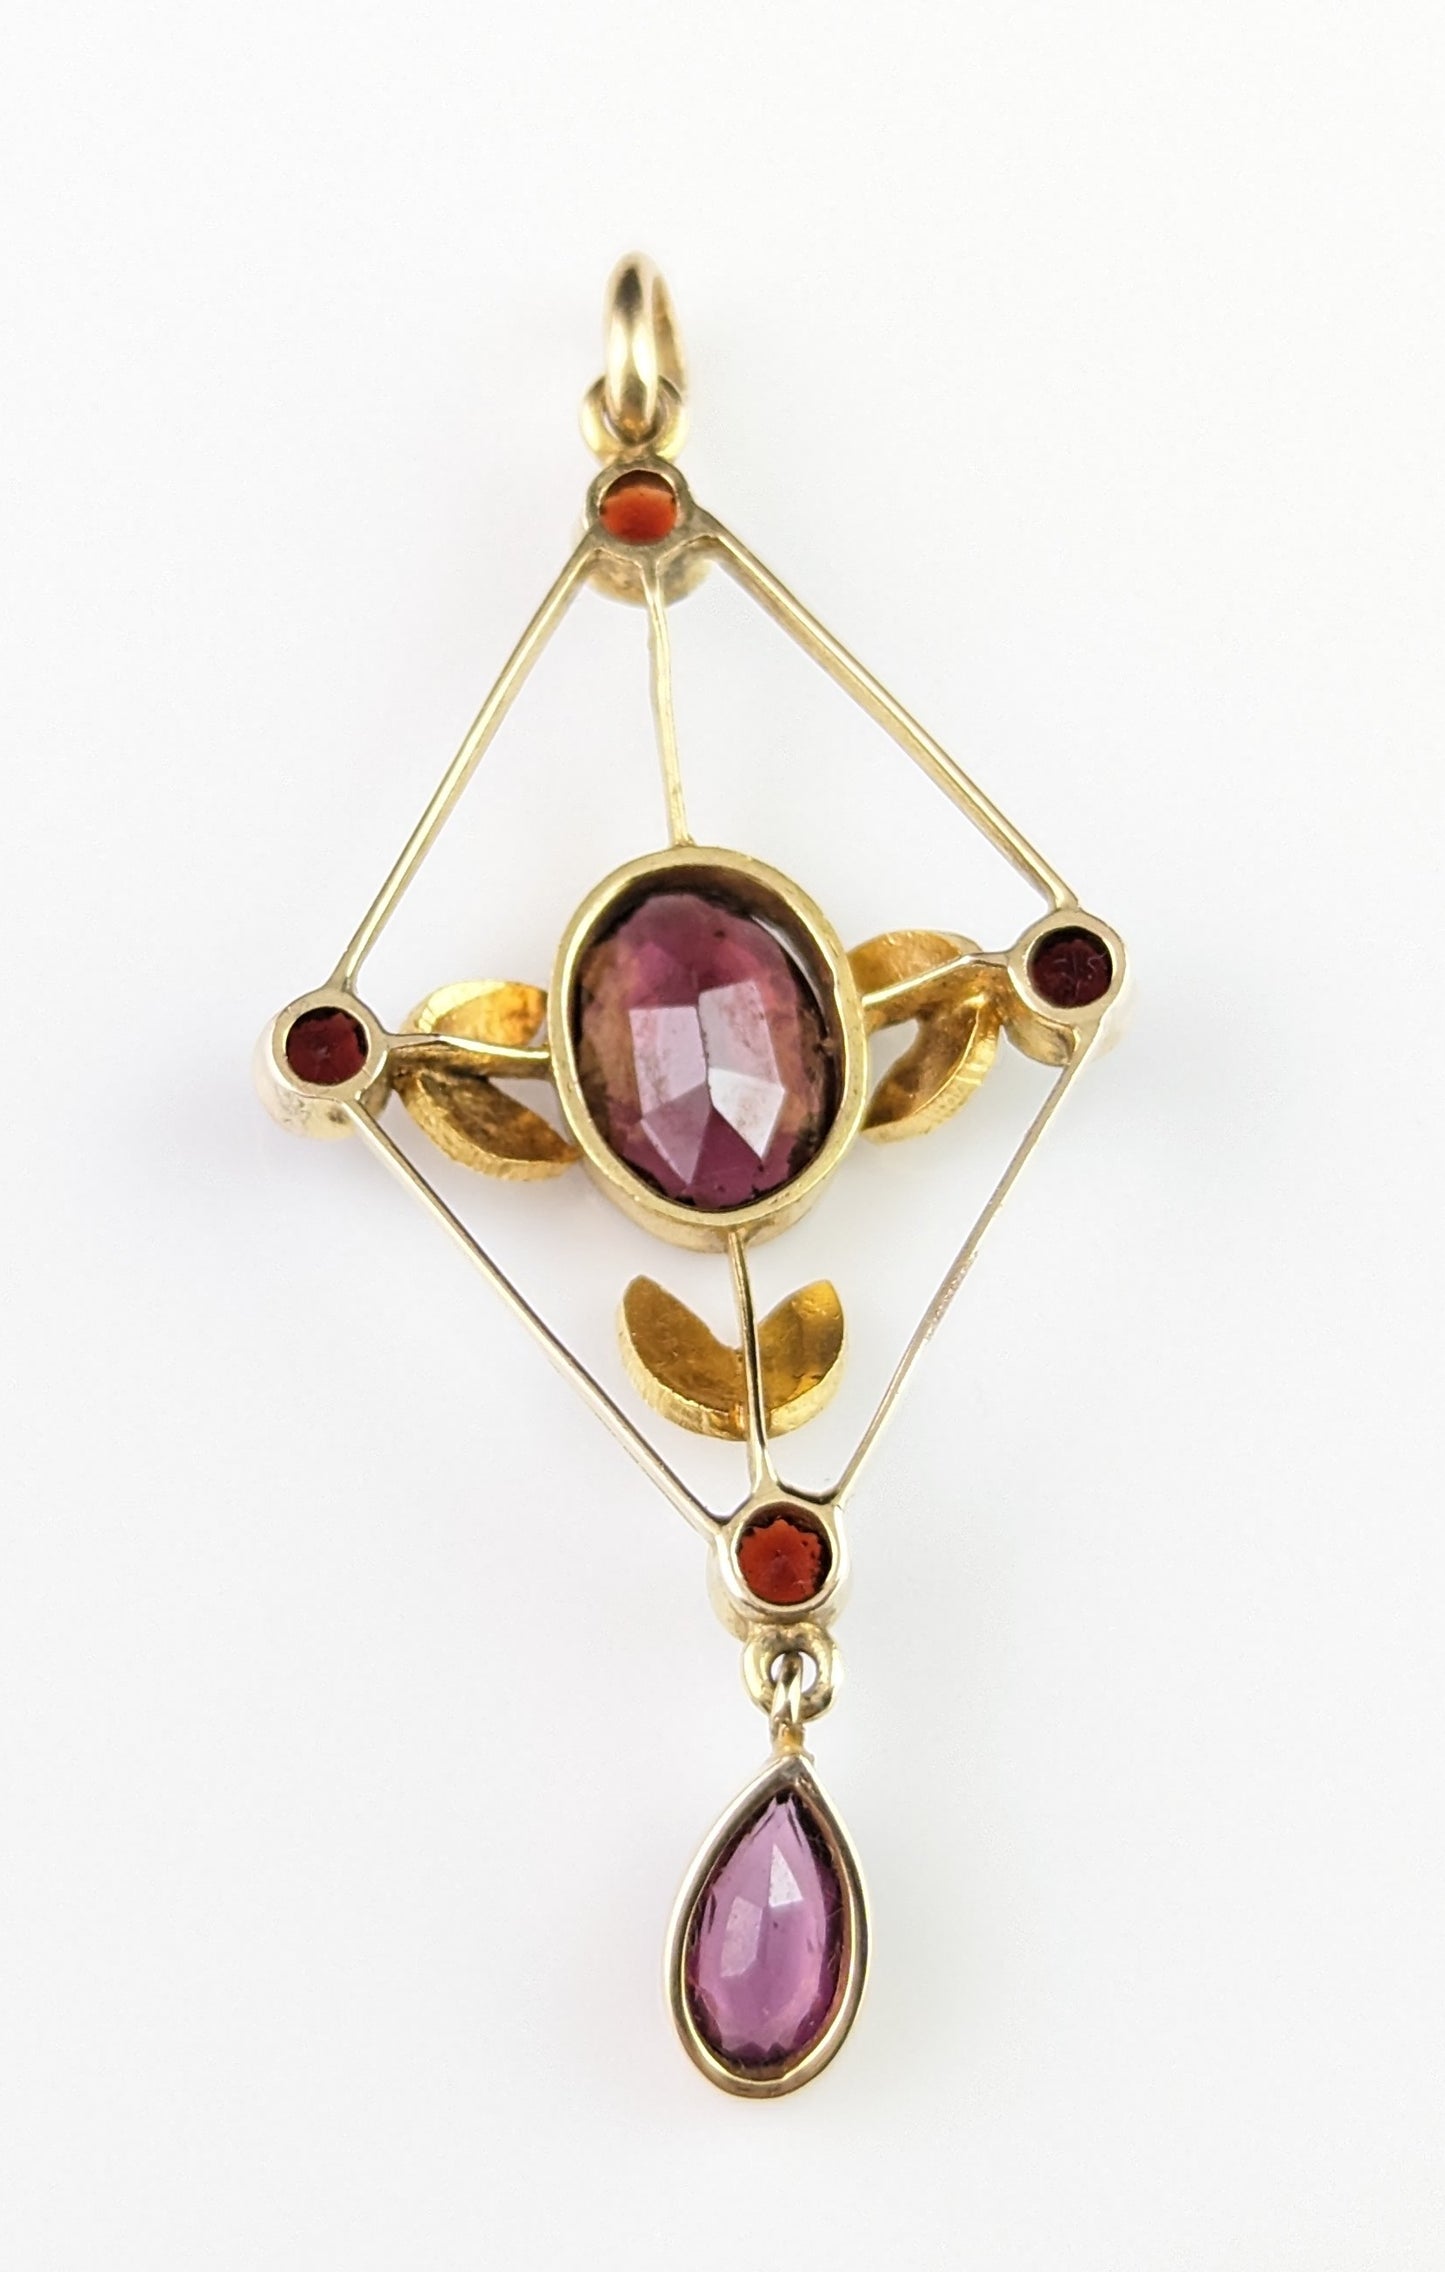 Antique Almandine garnet and pearl lavalier pendant, 9ct gold, Art Nouveau